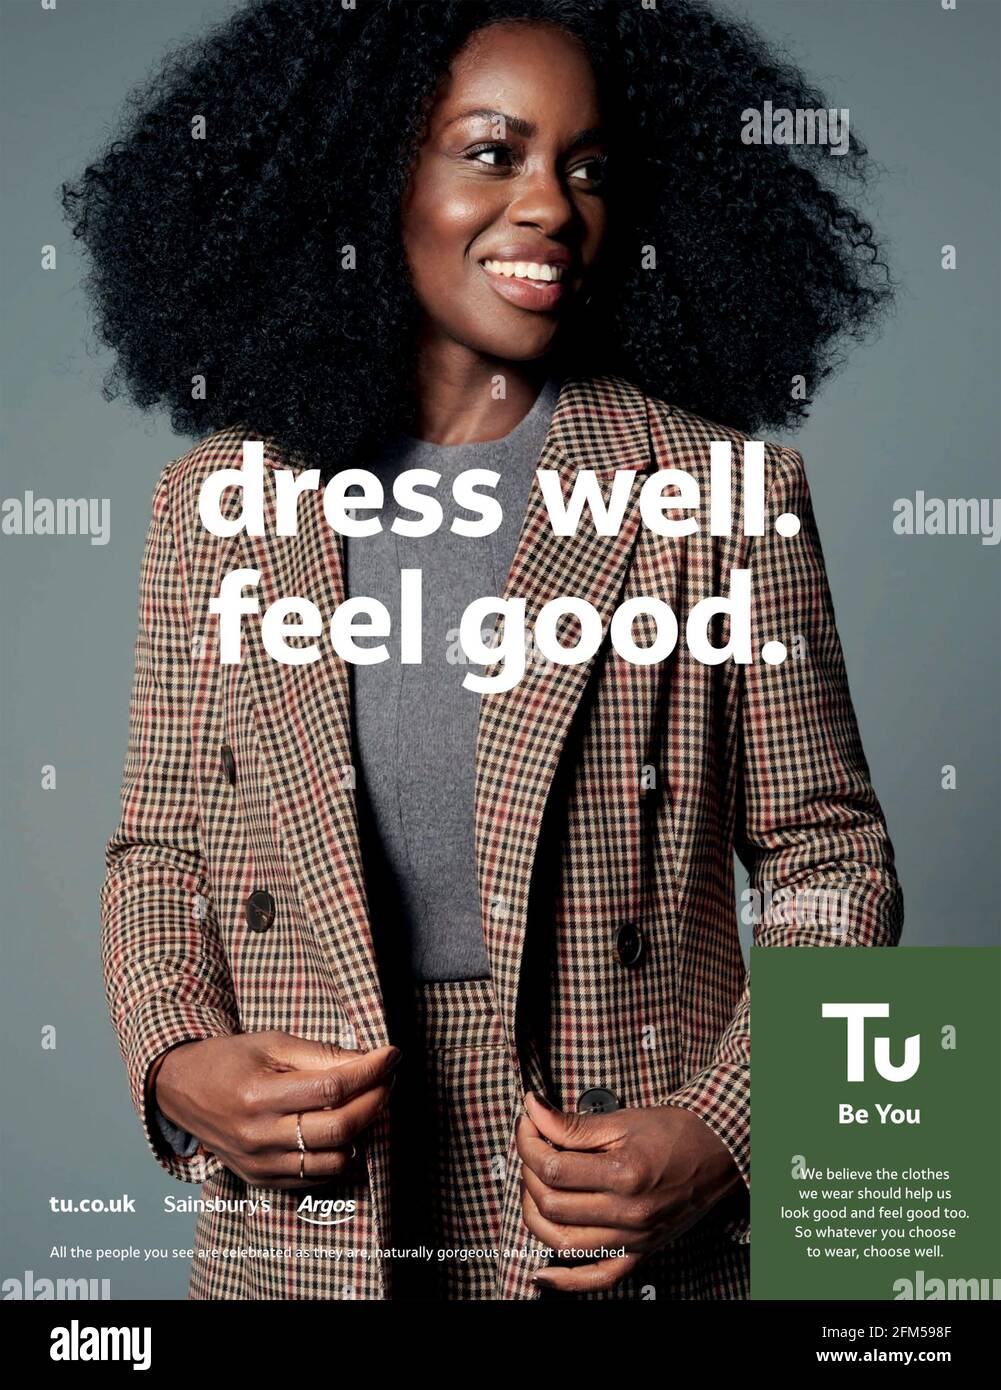 2020s UK Tu Magazine Advert Stock Photo